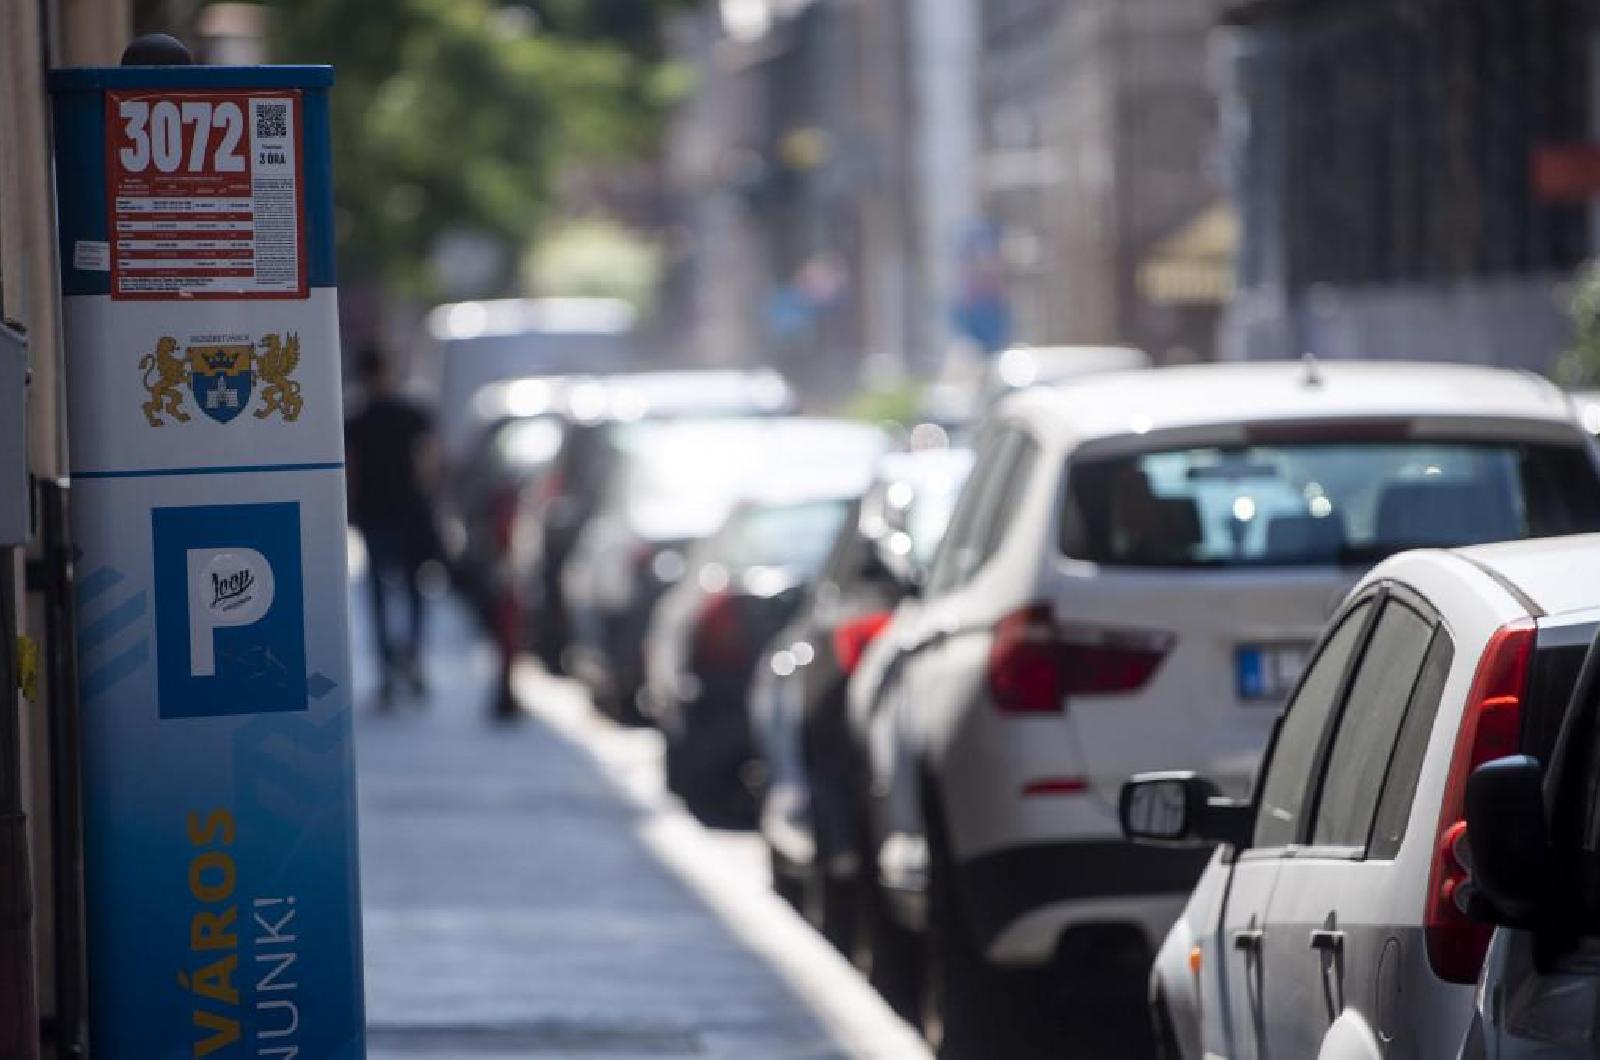 Majdnem mindenhol ingyen parkolhatunk az év utolsó hetében Budapesten